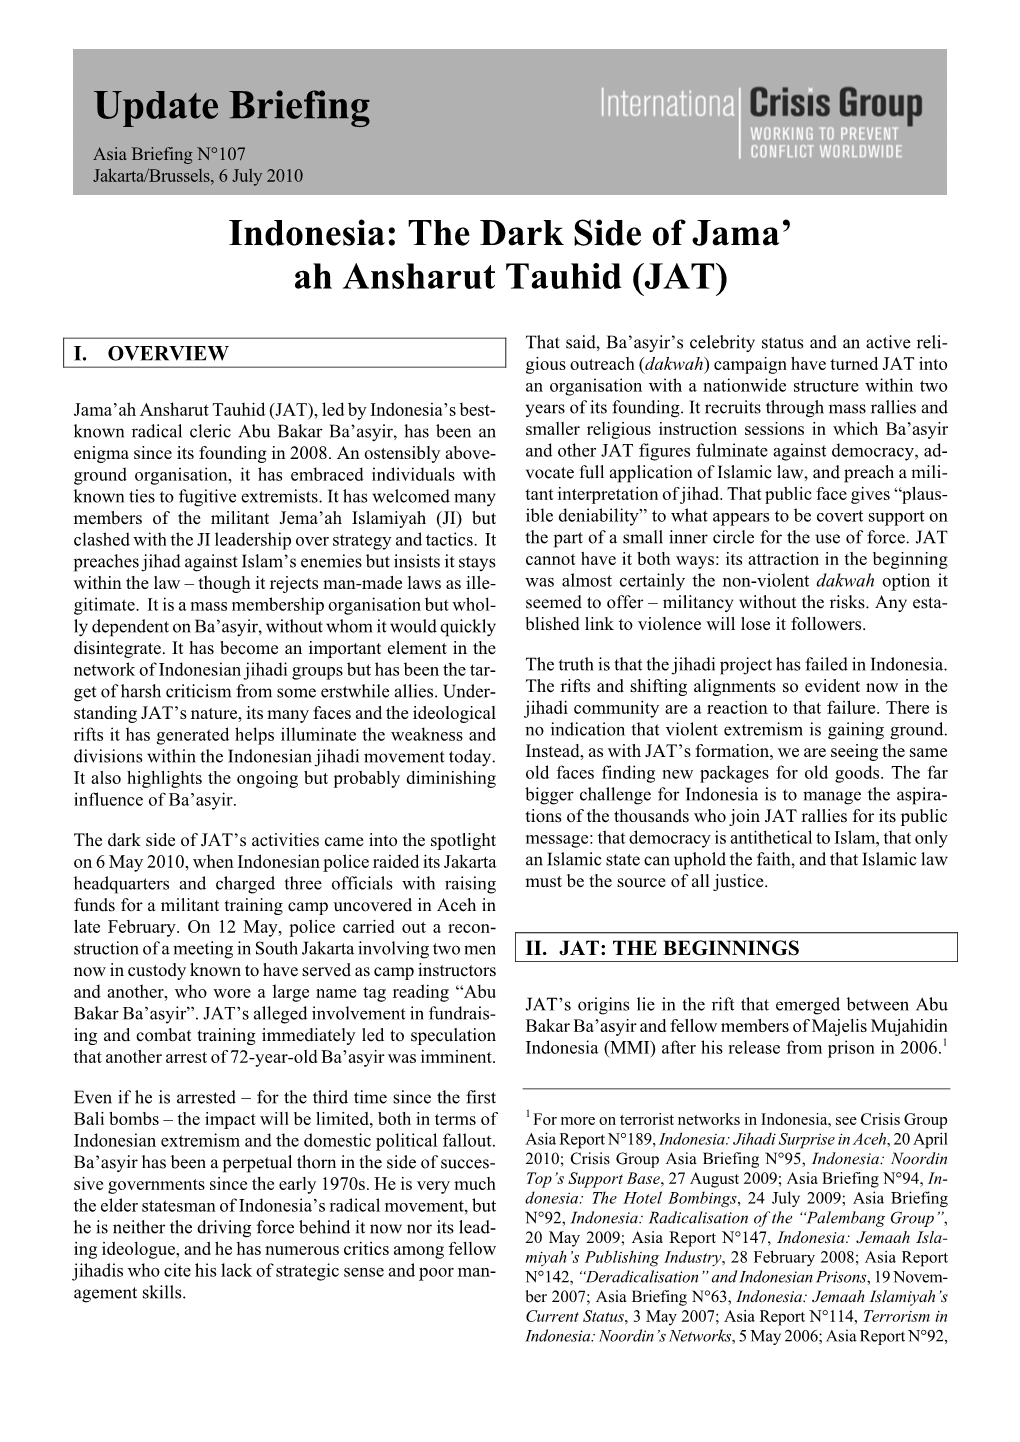 Indonesia: the Dark Side of Jama'ah Ansharut Tauhid (JAT)